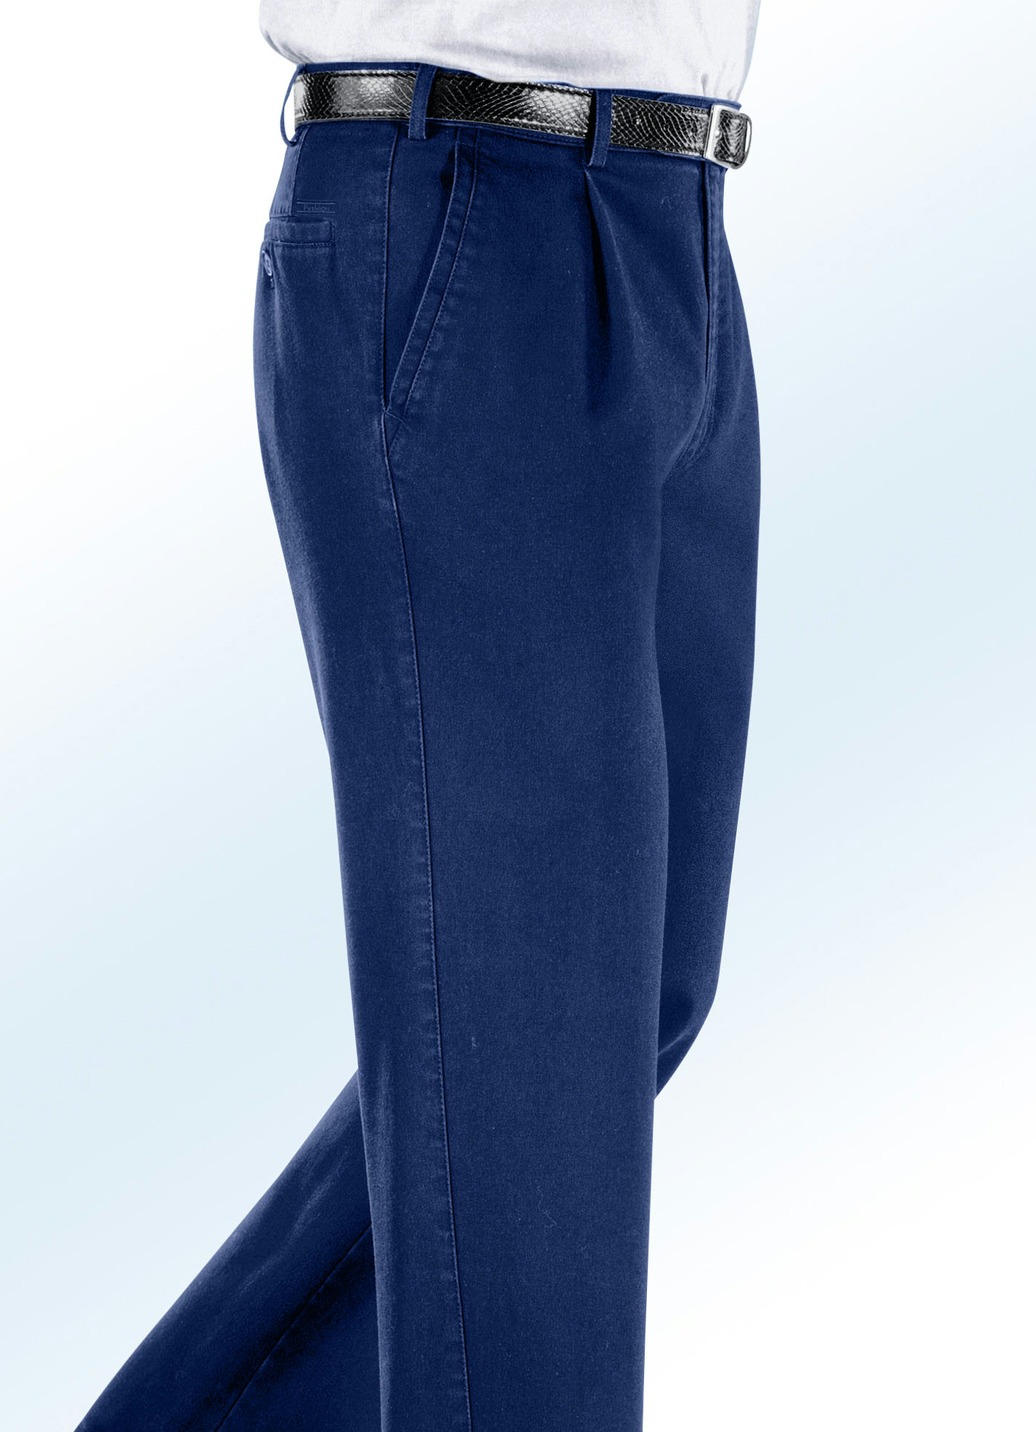 Bügelfreie Jeans mit Gürtel in 3 Farben, Jeansblau, Größe 26 von BADER